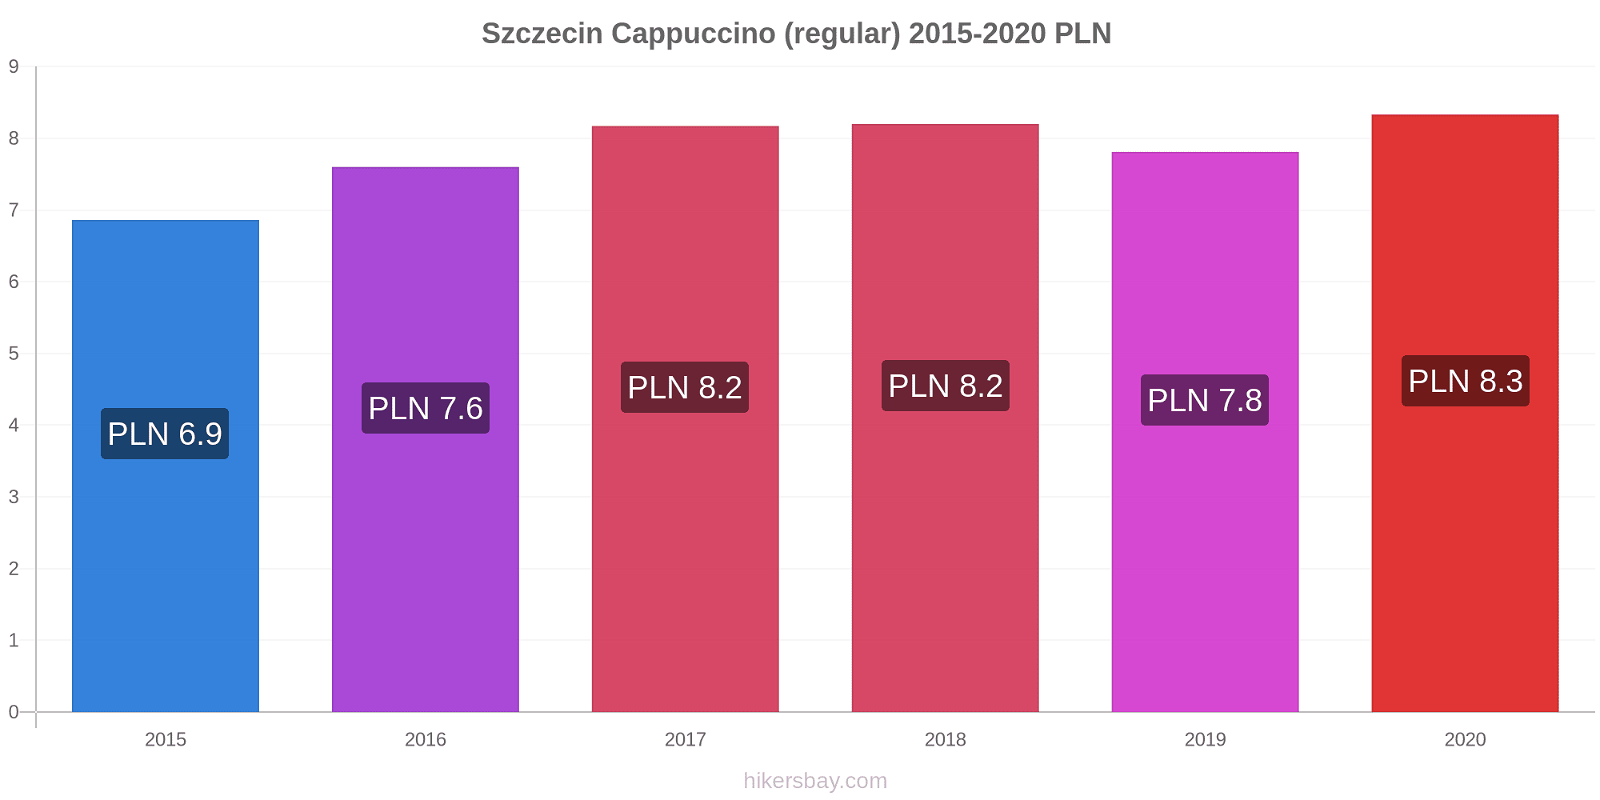 Szczecin price changes Cappuccino (regular) hikersbay.com